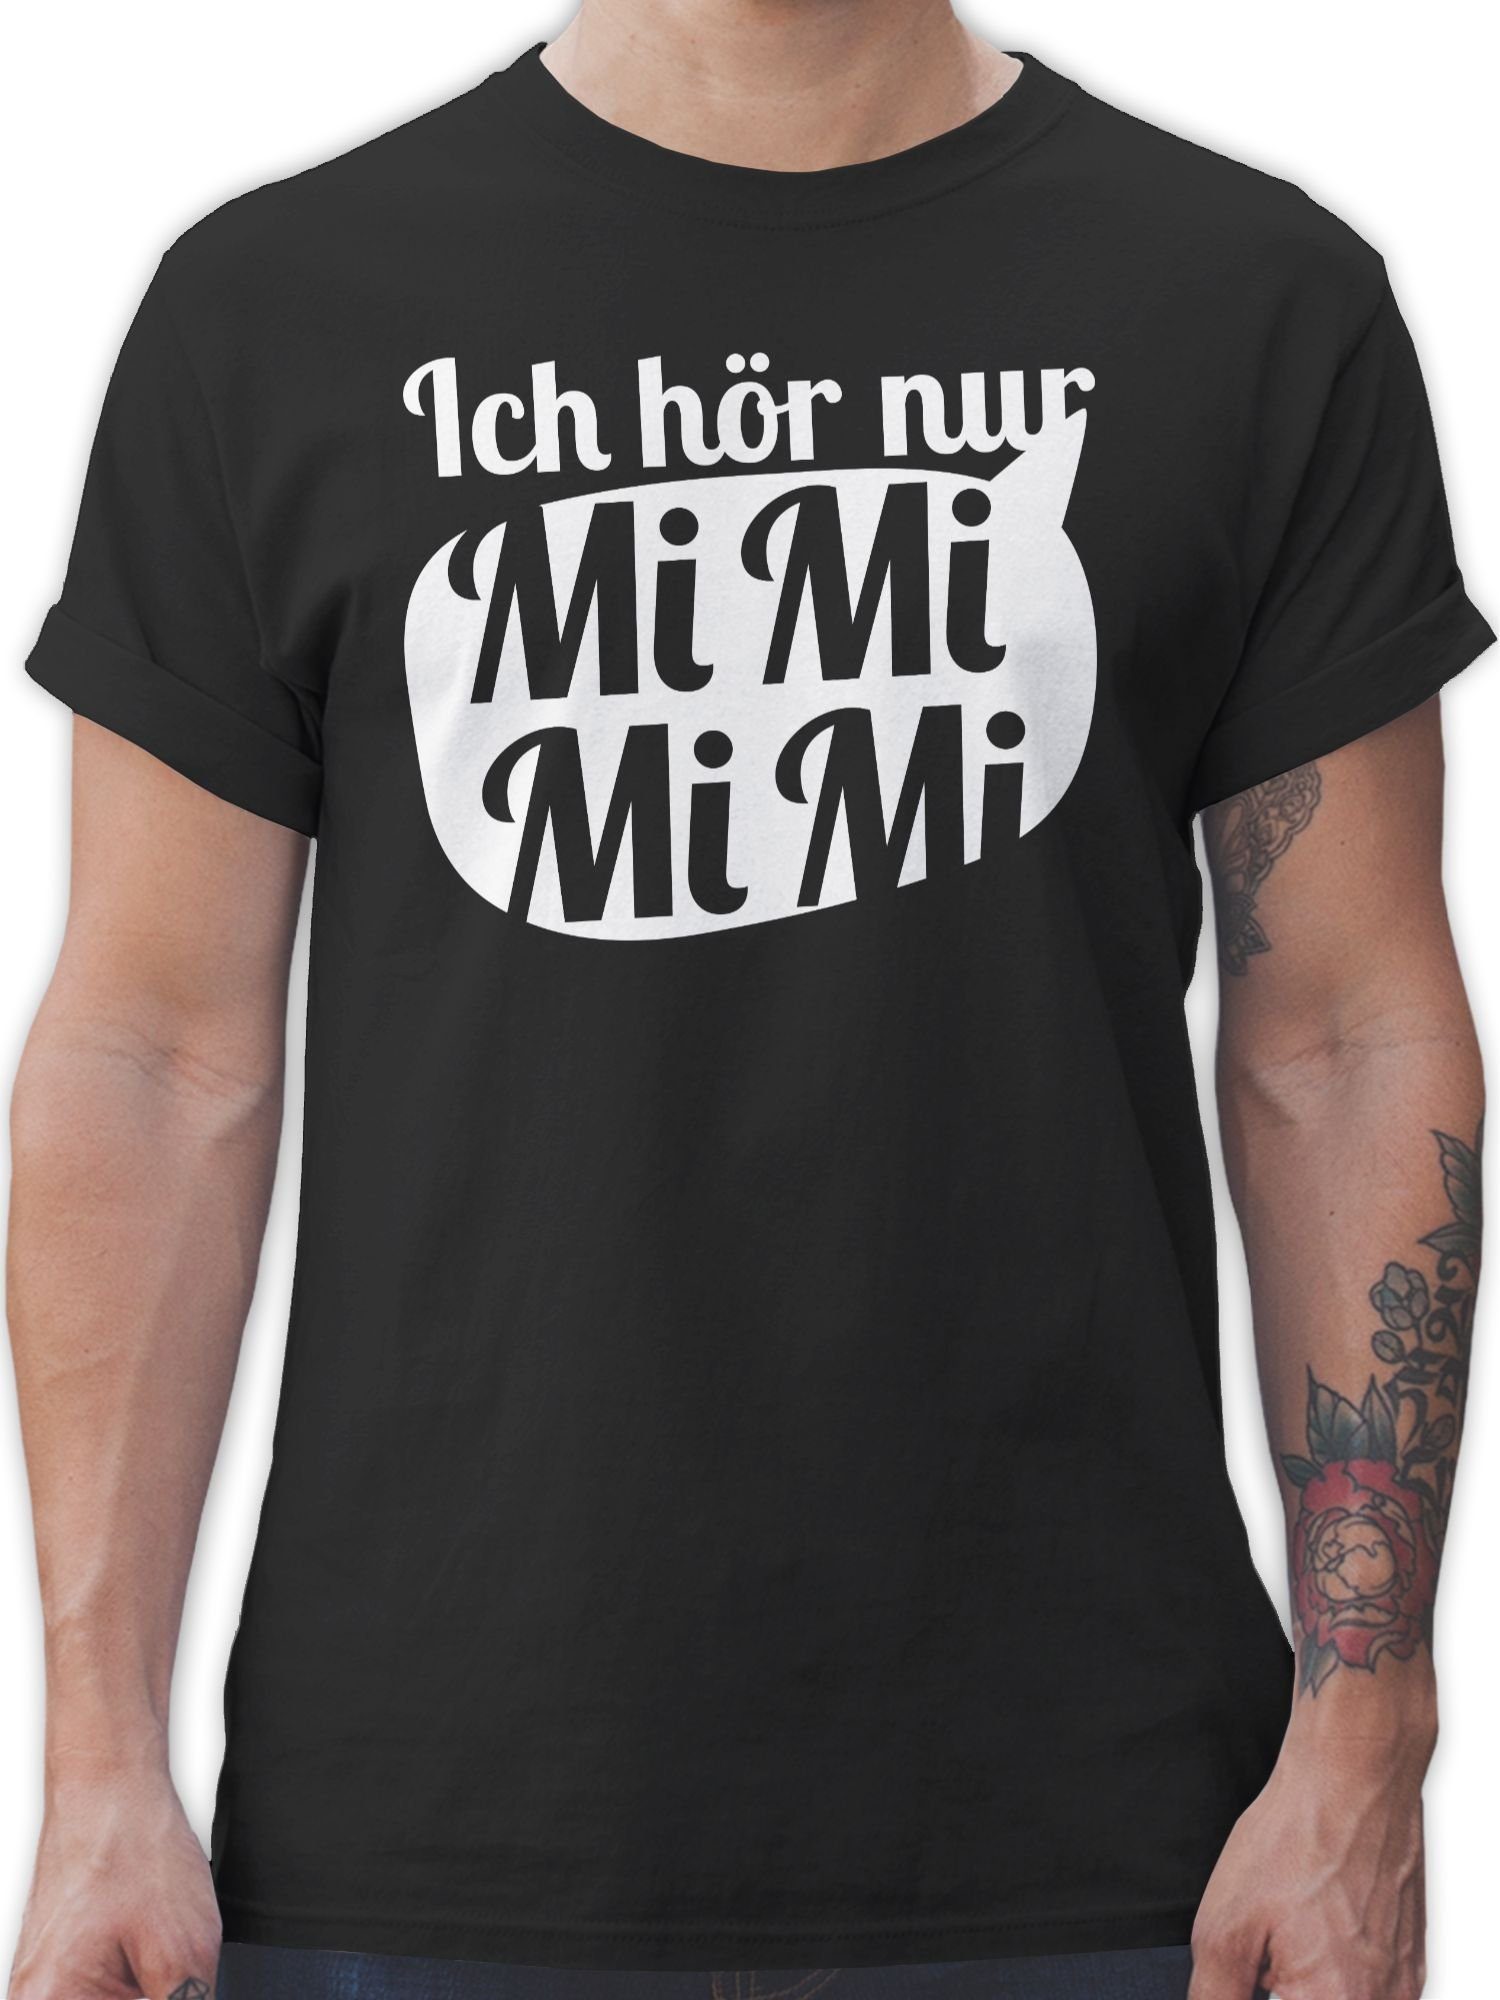 Sprechblase mit - MIMIMI hör Spruch mit 1 Shirtracer Statement Schwarz weiß nur T-Shirt Ich Sprüche